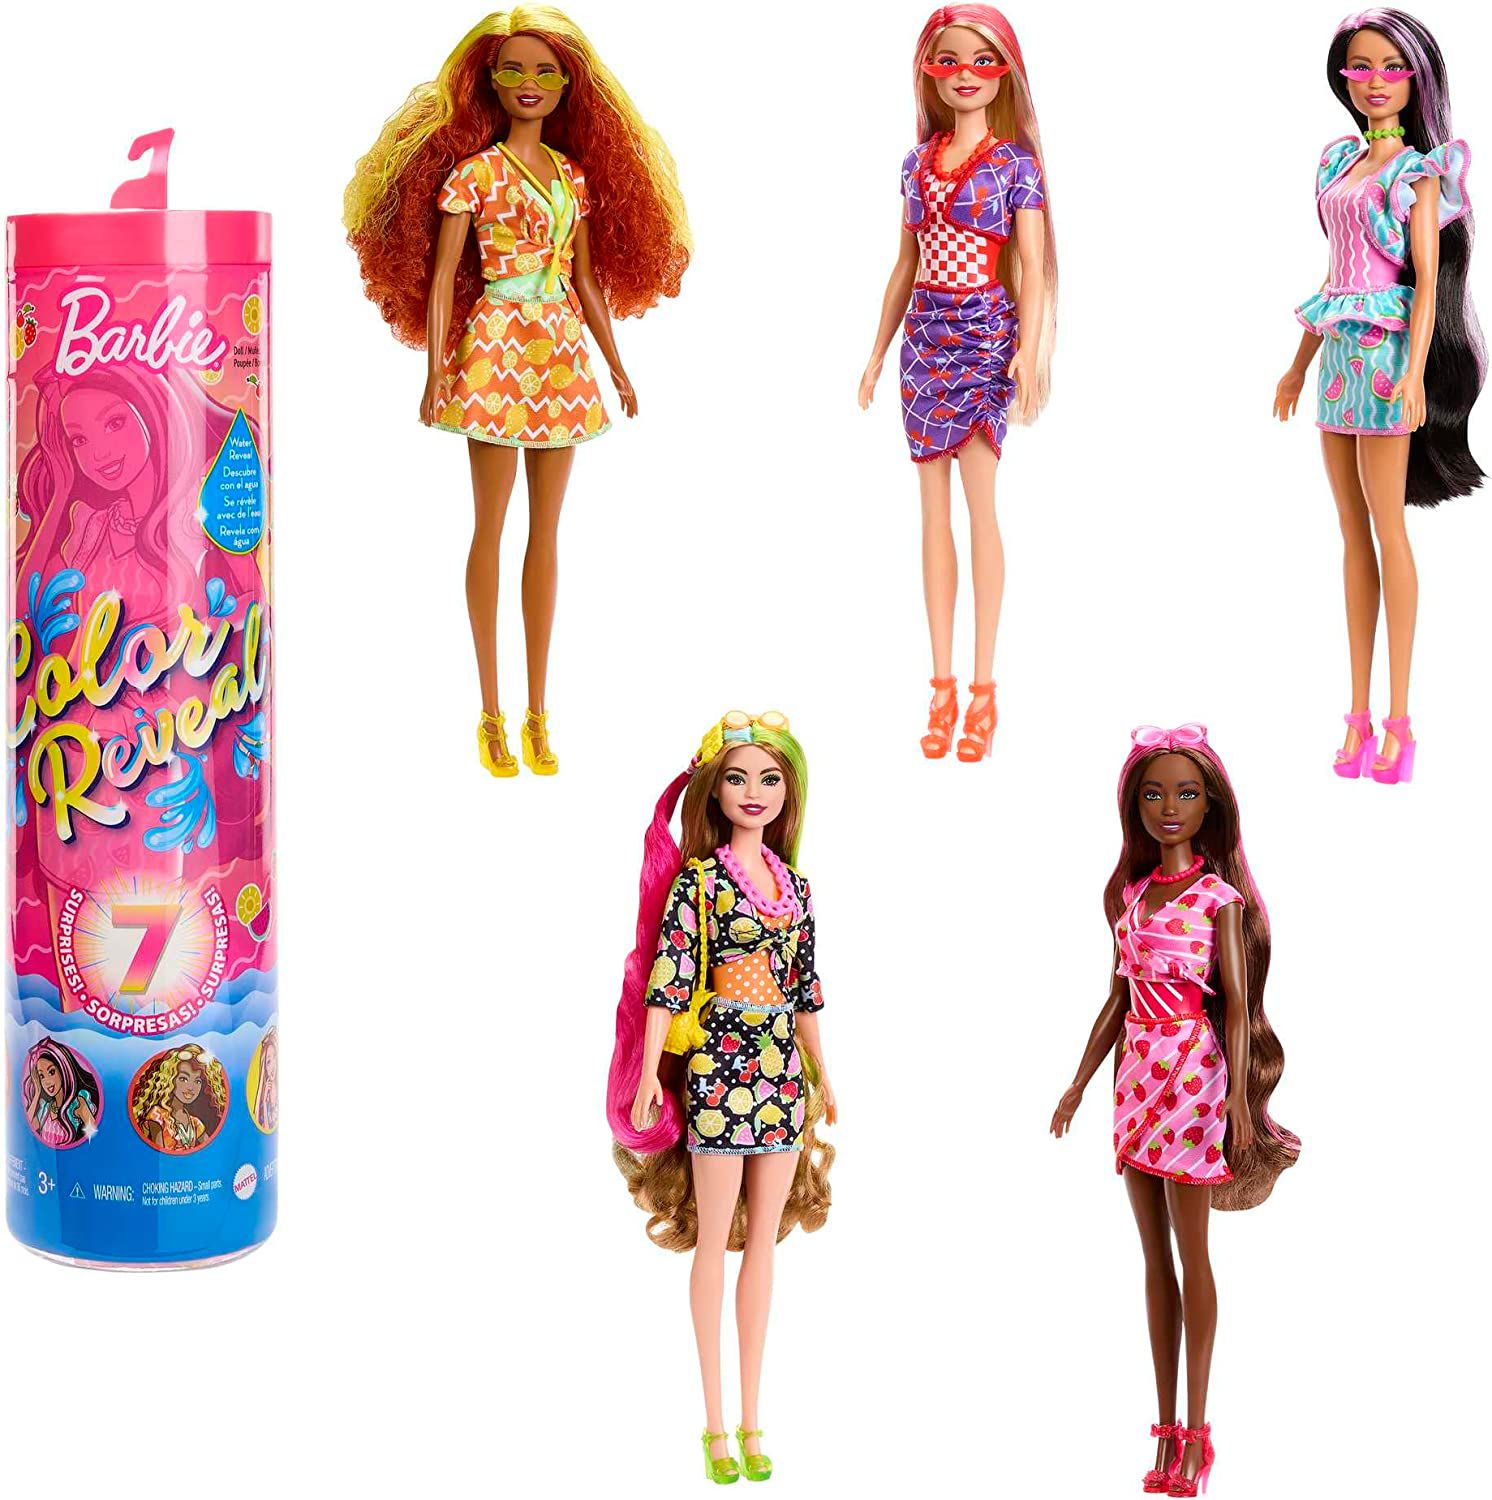 Xbox Series S ganha versão limitada temática da Barbie com direito